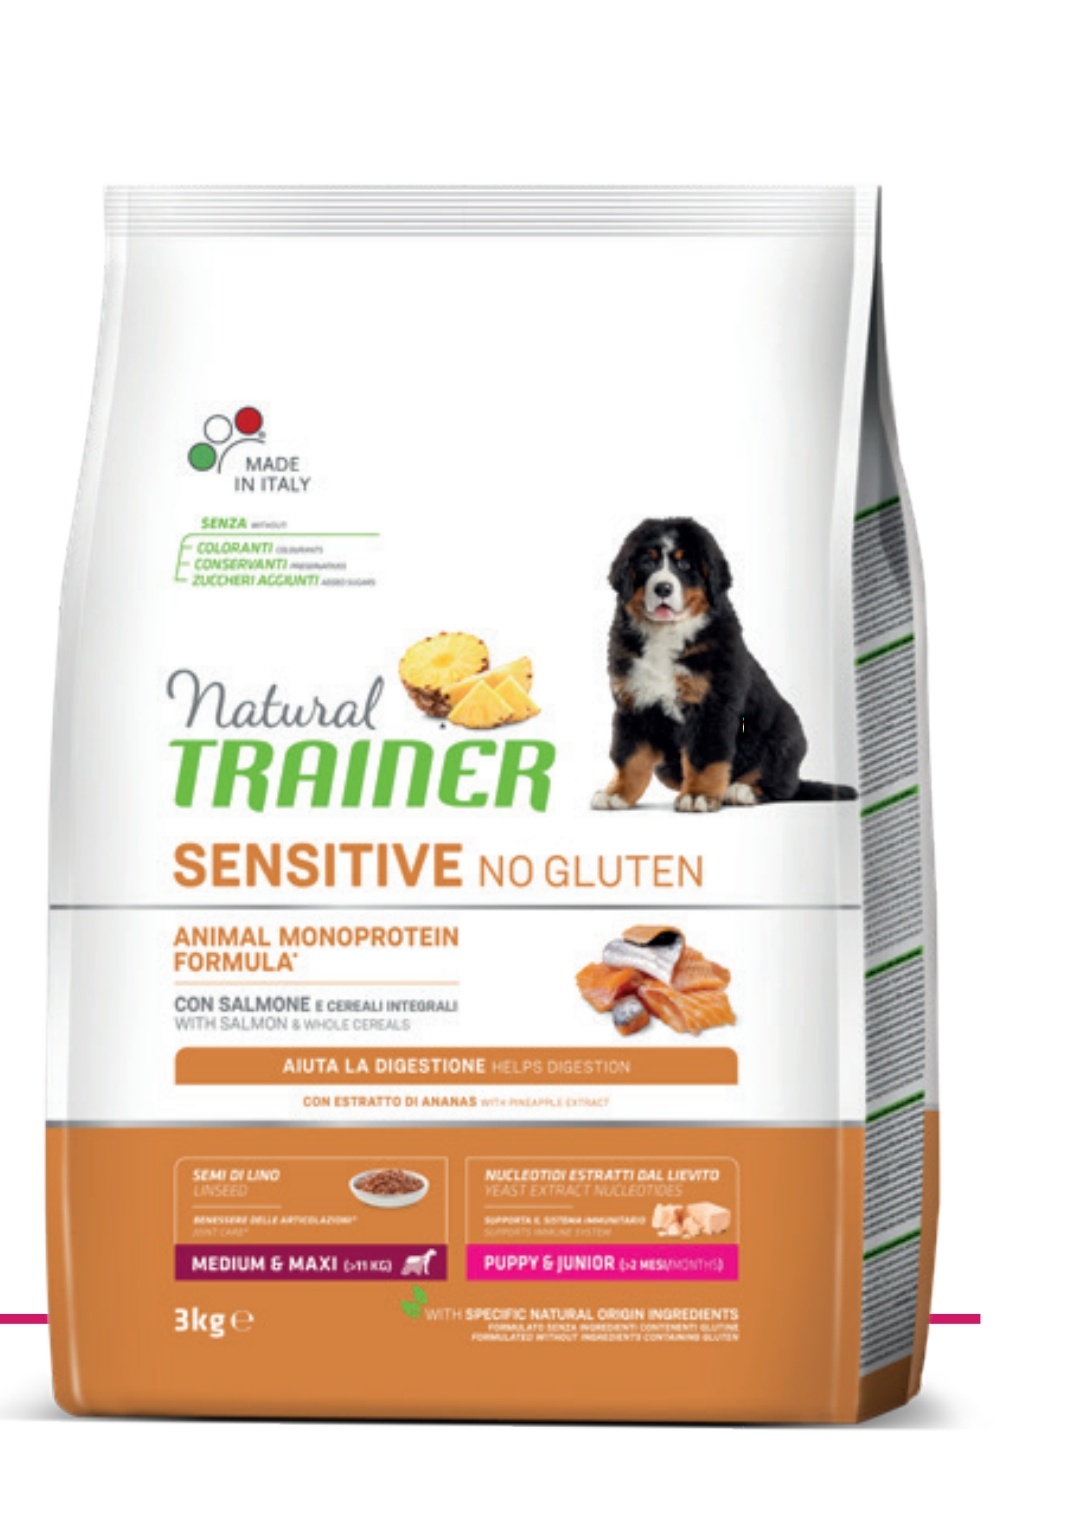 Trainer Sensitive No Gluten Puppy & Junior (>2 mesi) con Salmone e Cereali Integrali 12kg